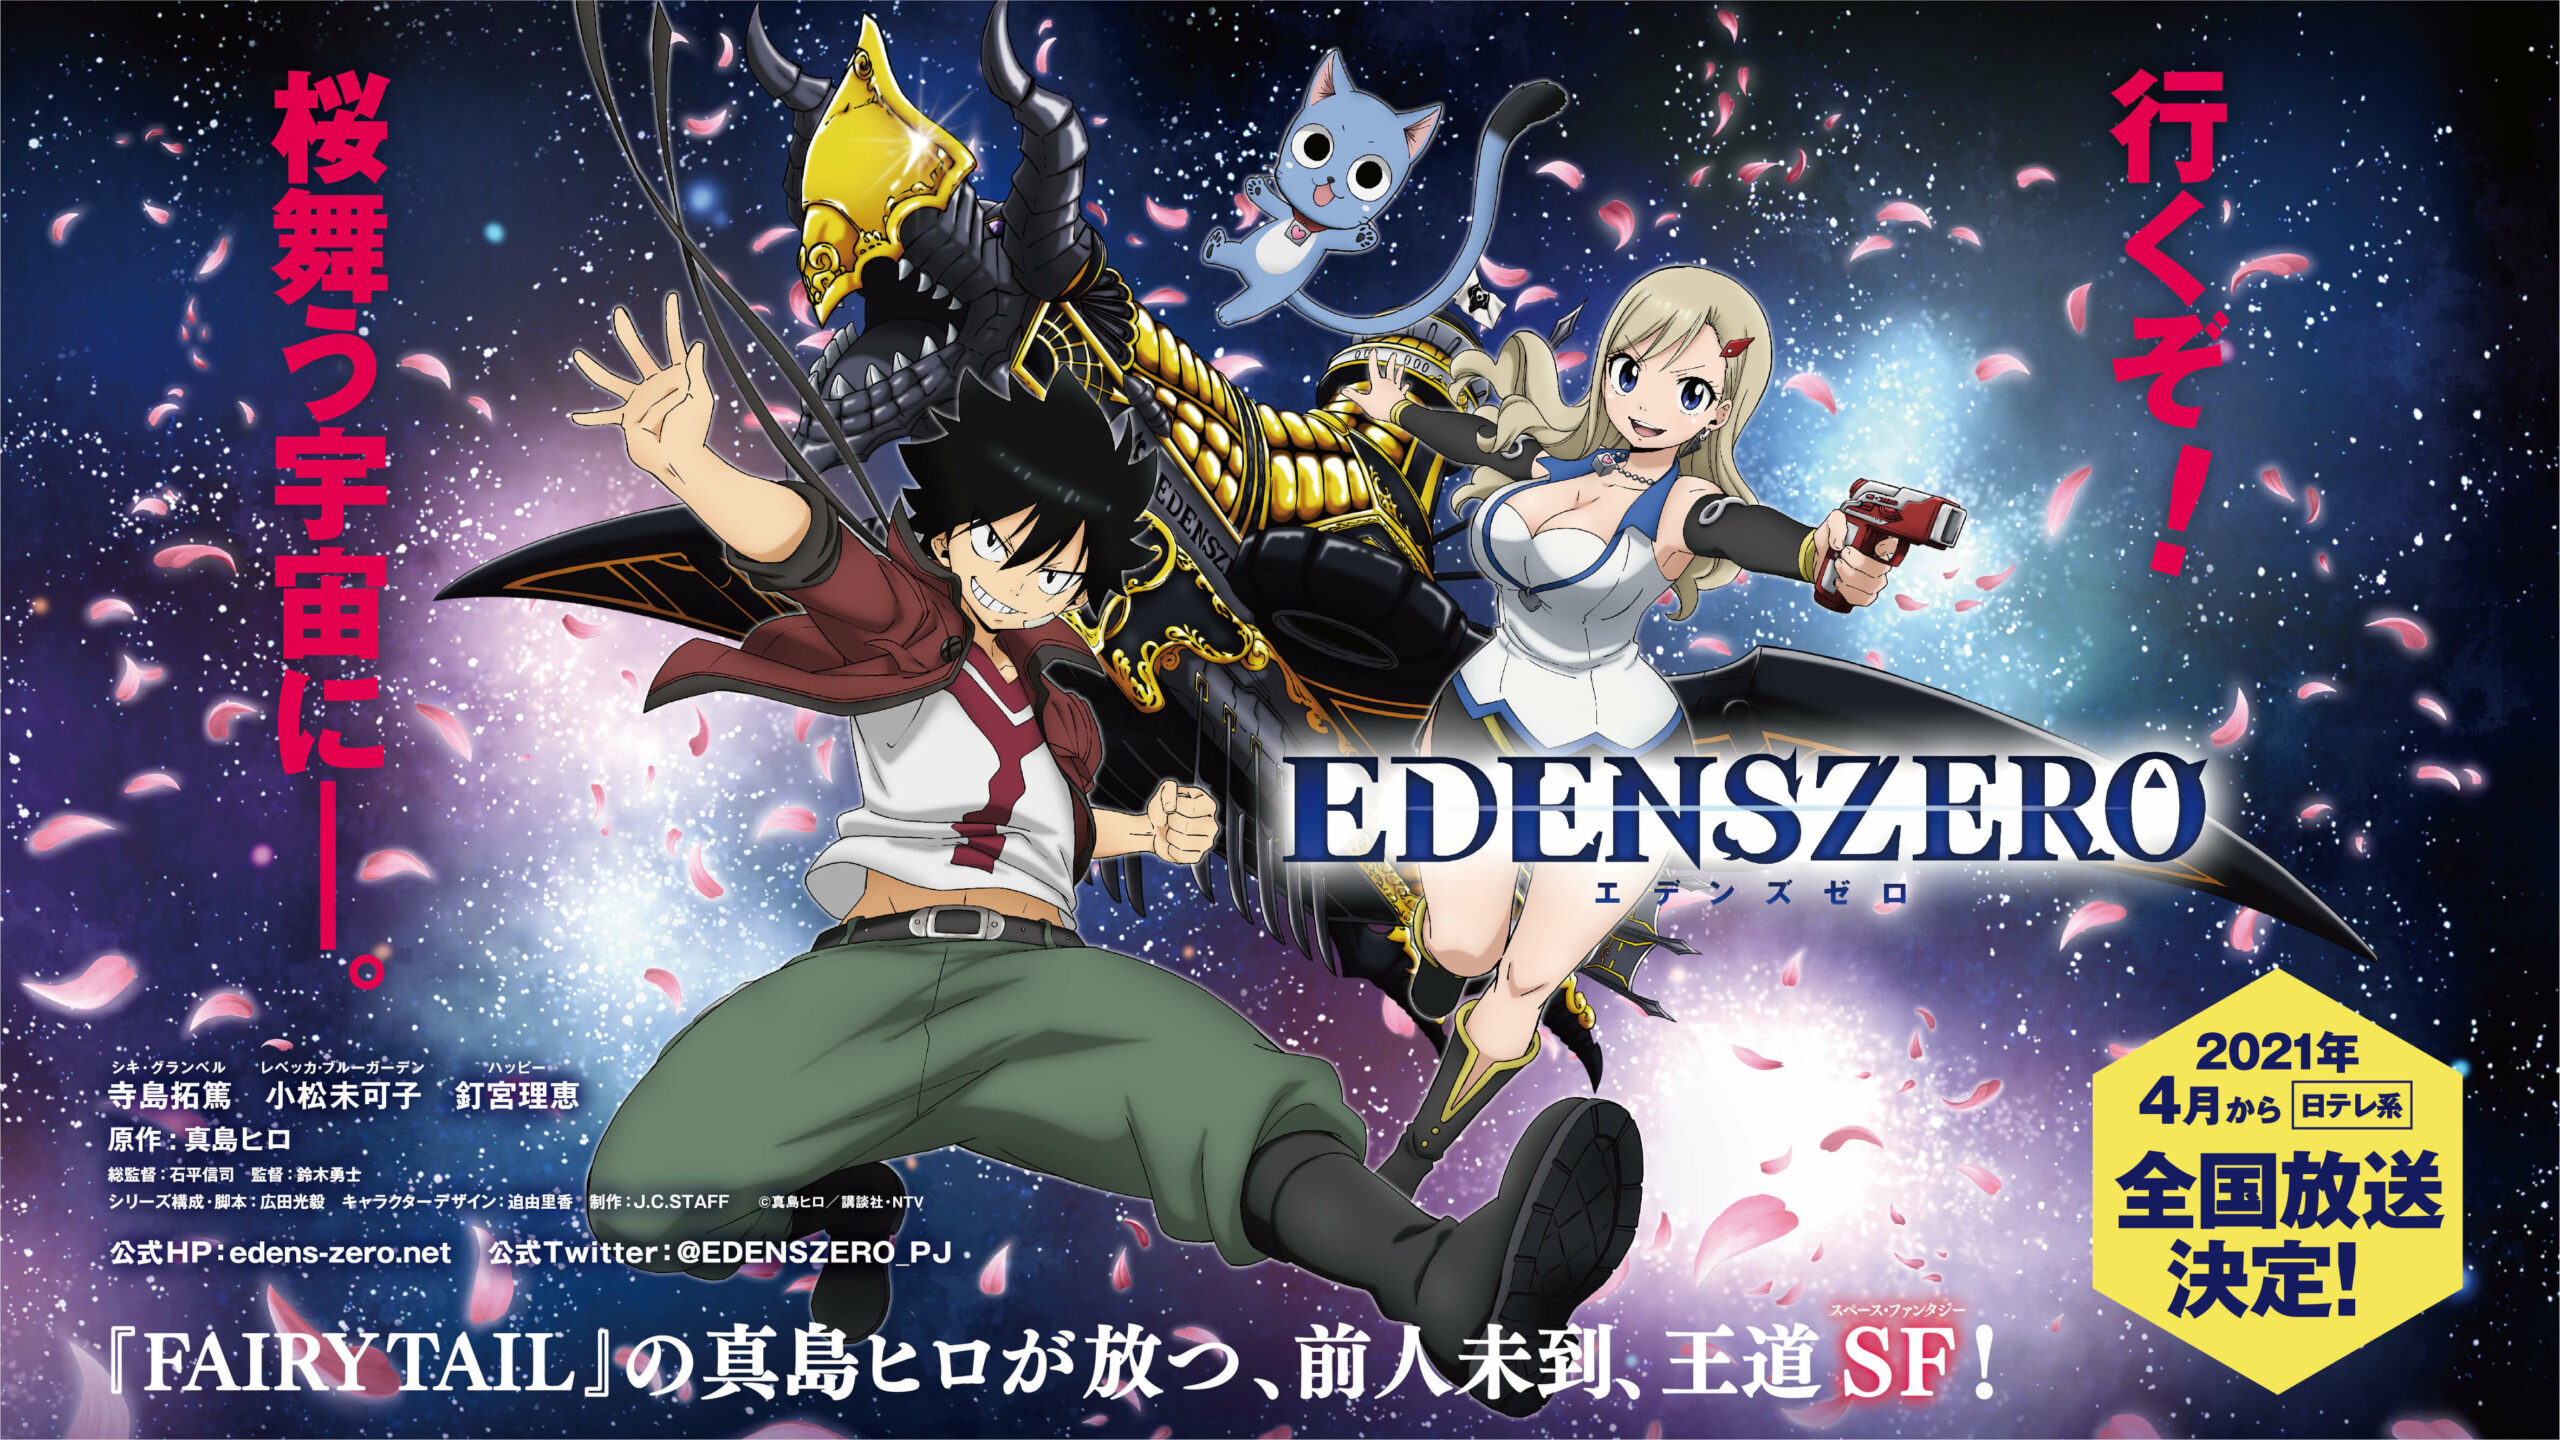 Edens Zero Anime, From Fairy Tail Author